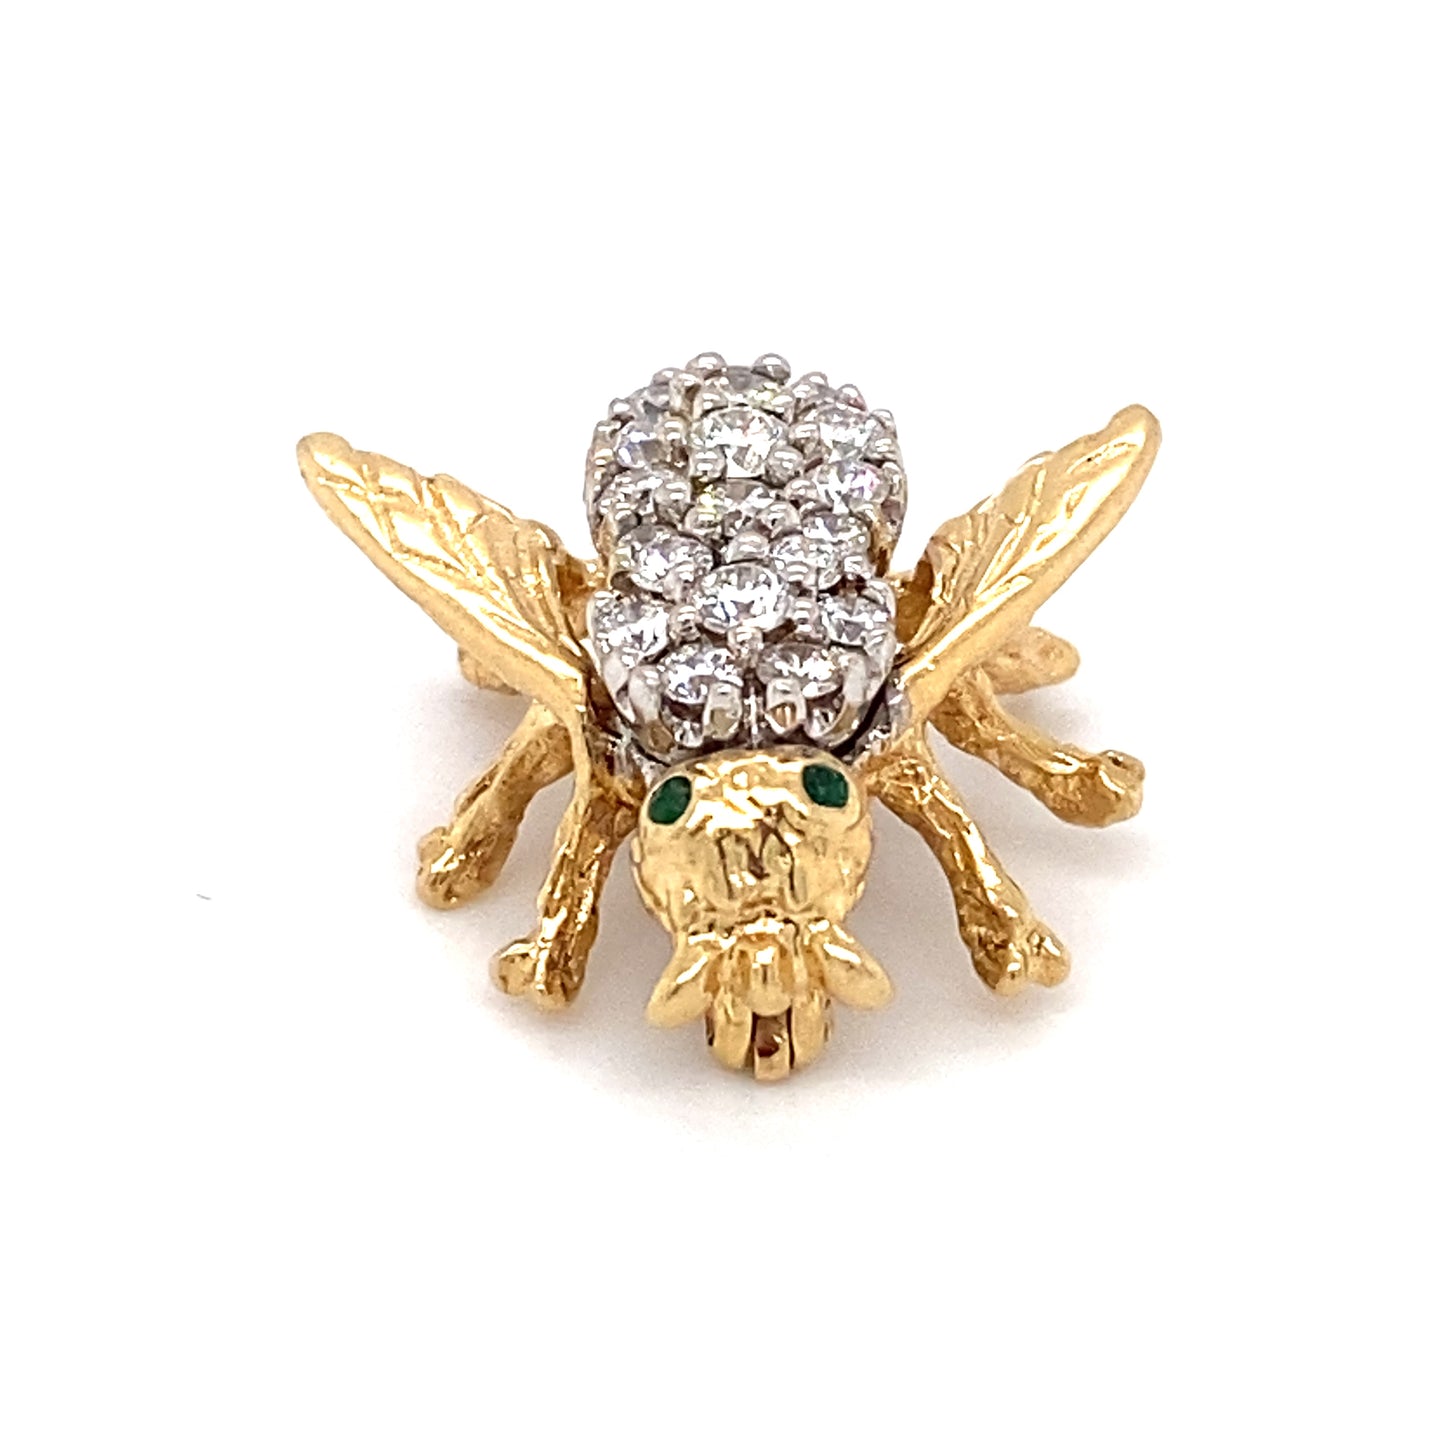 Circa 1960s Emerald and Diamond Bee Pin in 14K Gold